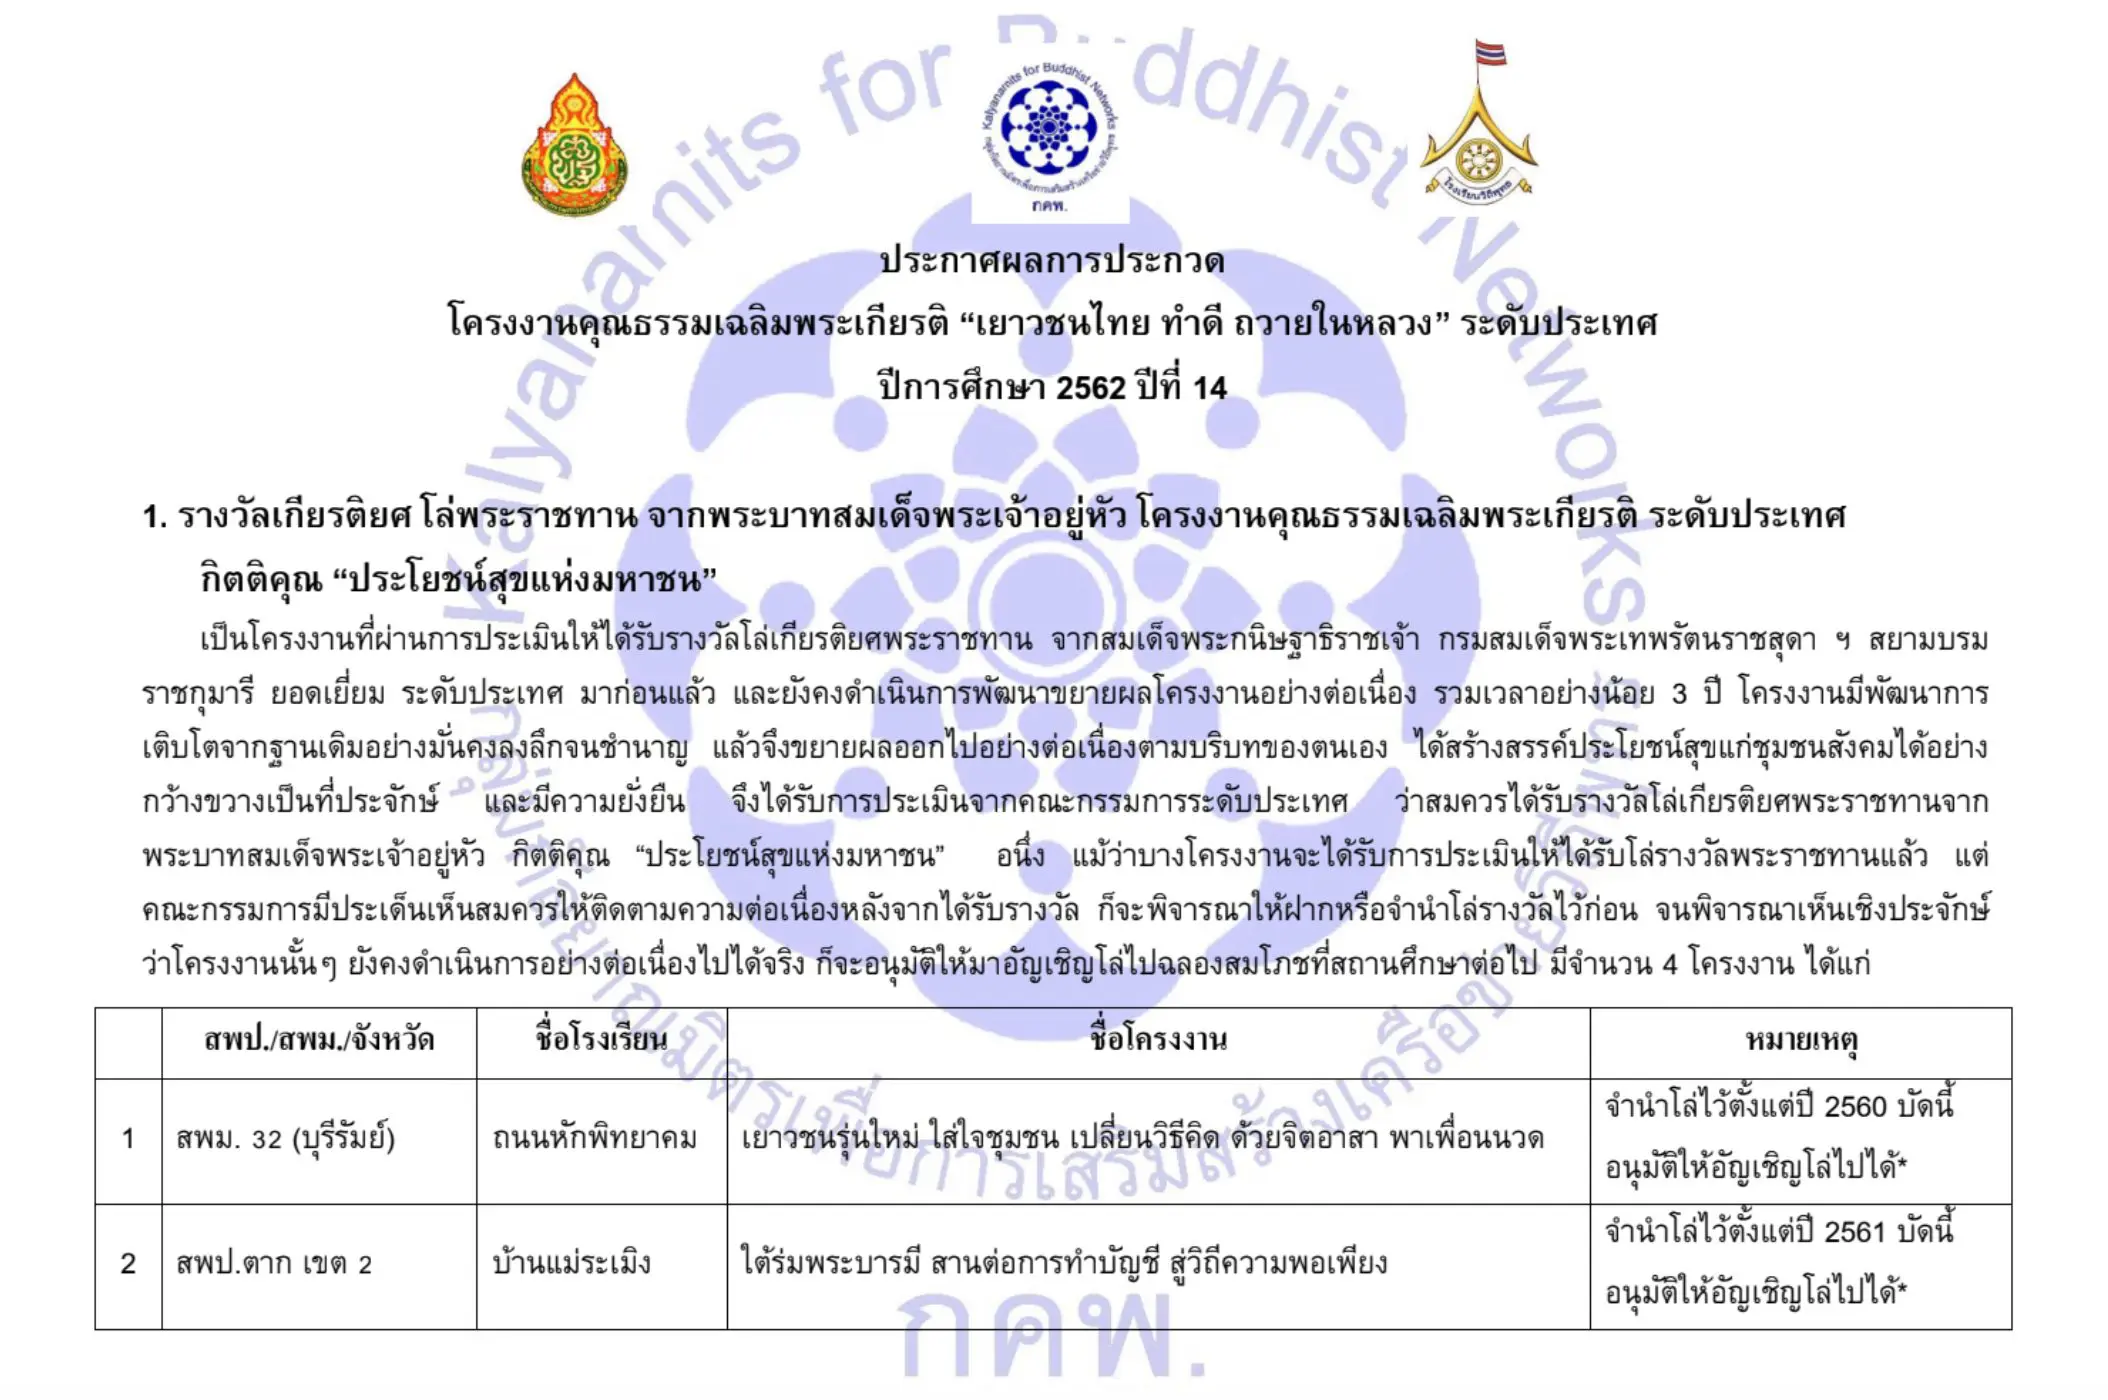 ประกาศผลการประกวด โครงงานคุณธรรมฉลิมพระเกียรติ“เยาวชนไทย ทำดี ถวายในหลวง”ระดับประเทศ  ปีการศึกษา 2562 ปีที่ 14 